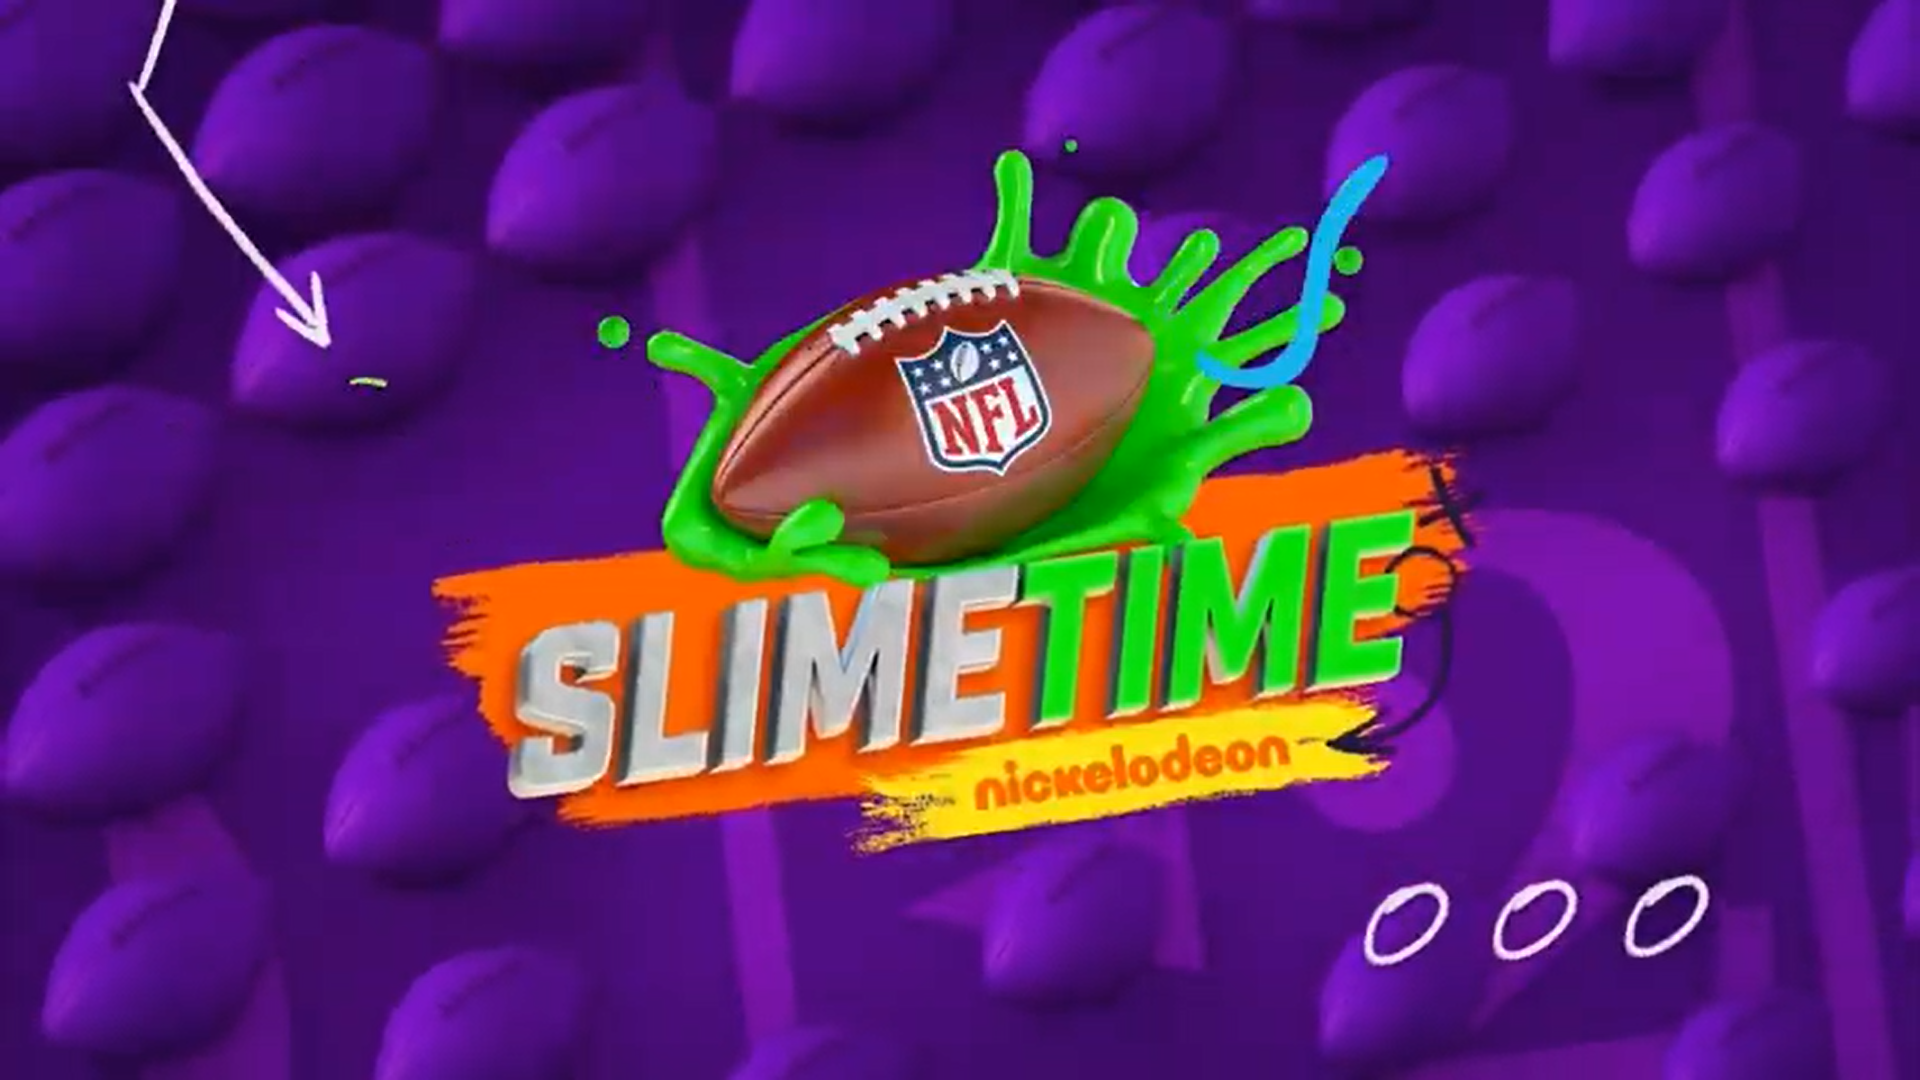 slime time